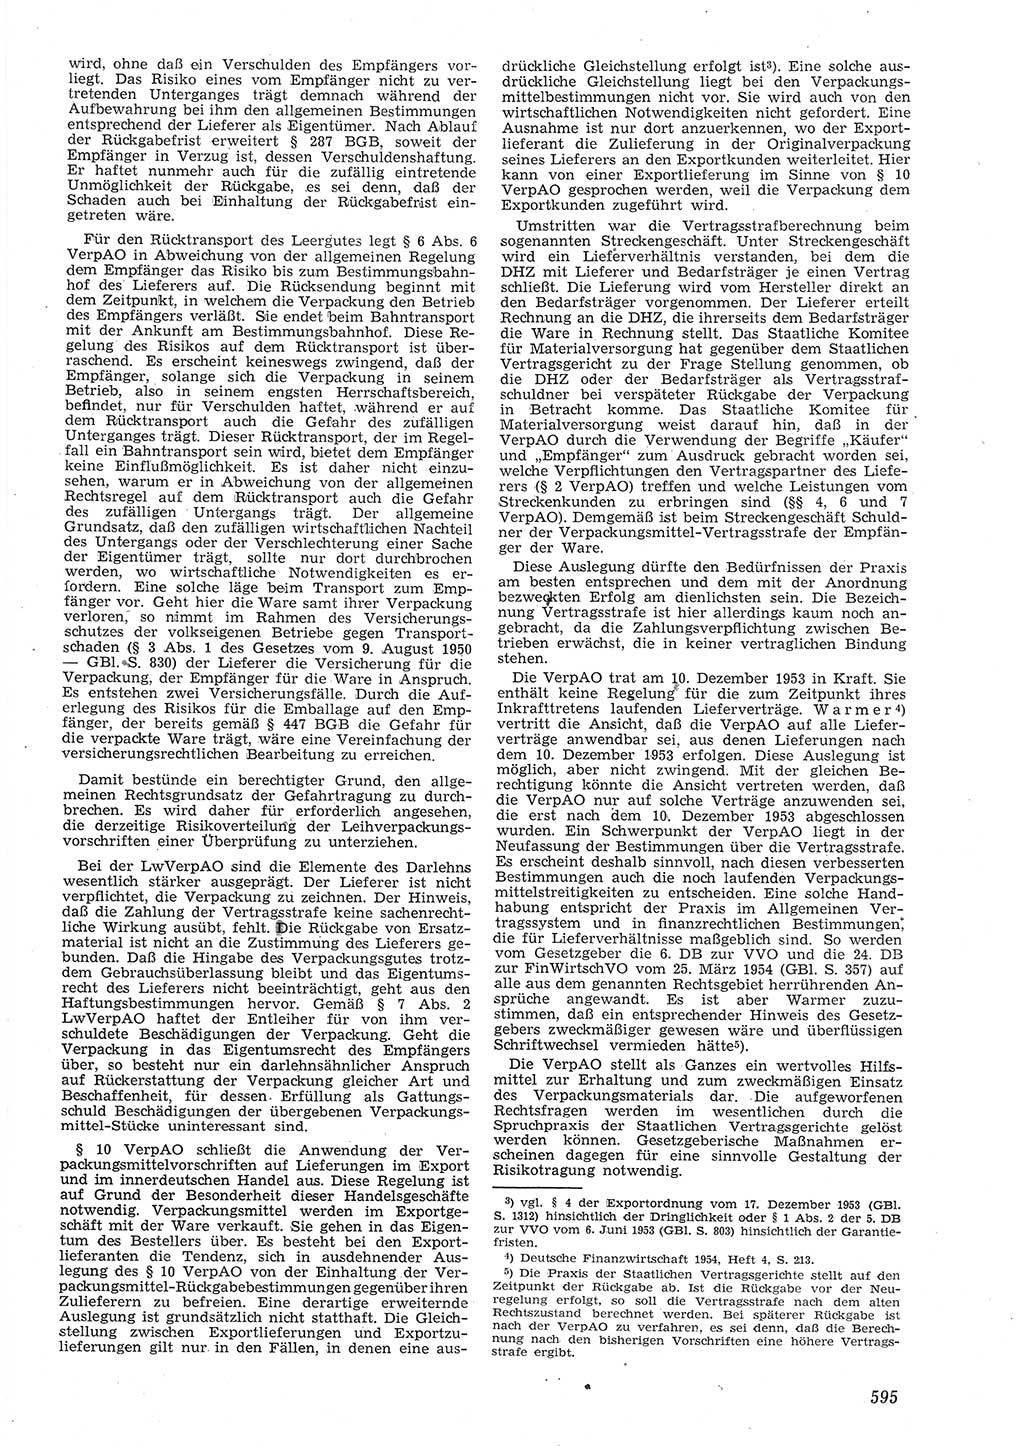 Neue Justiz (NJ), Zeitschrift für Recht und Rechtswissenschaft [Deutsche Demokratische Republik (DDR)], 8. Jahrgang 1954, Seite 595 (NJ DDR 1954, S. 595)